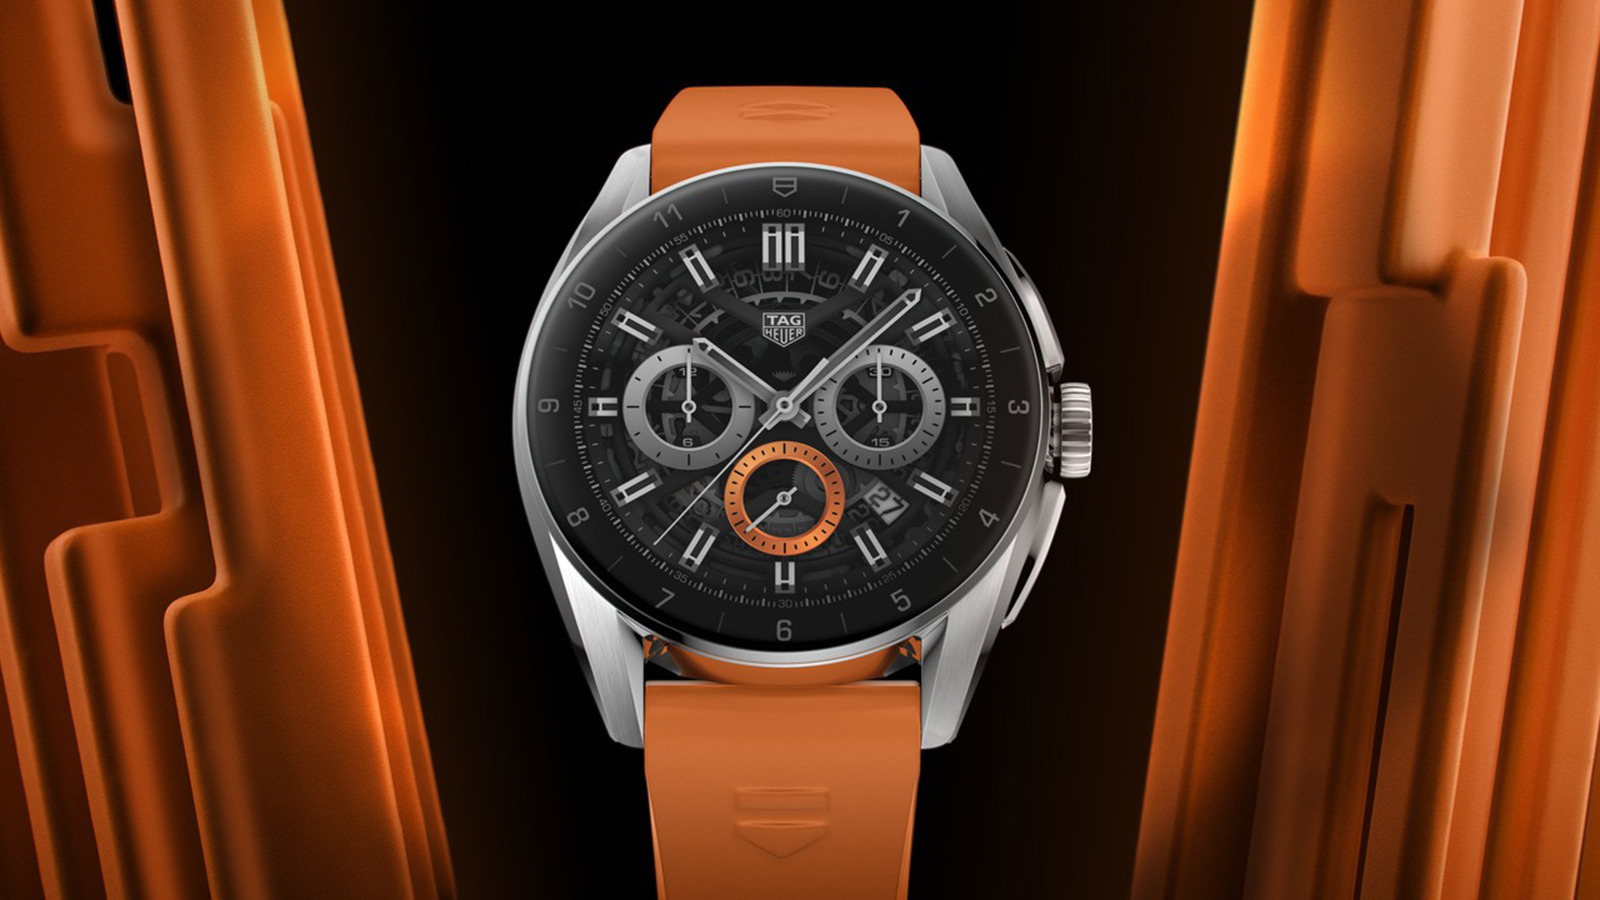 Tag Heuer continua fazendo smartwatches caros, mas alguém está comprando?